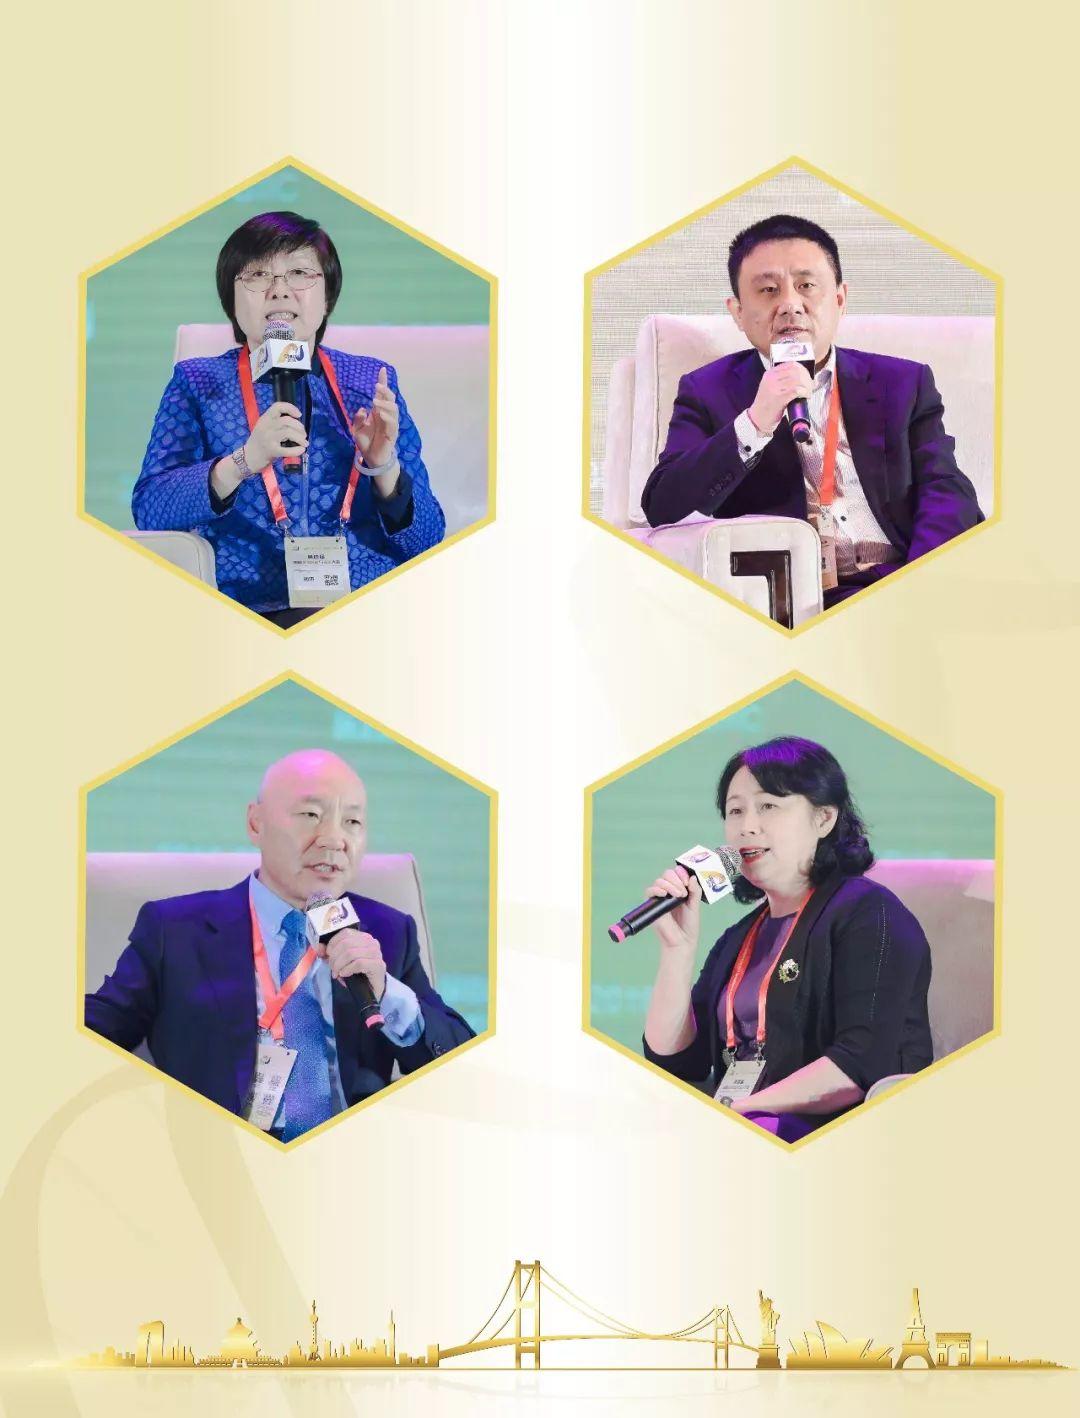 隆重开幕——第四届中国医药创新与投资大会 复杂国际形势下再搭国际对话交流平台